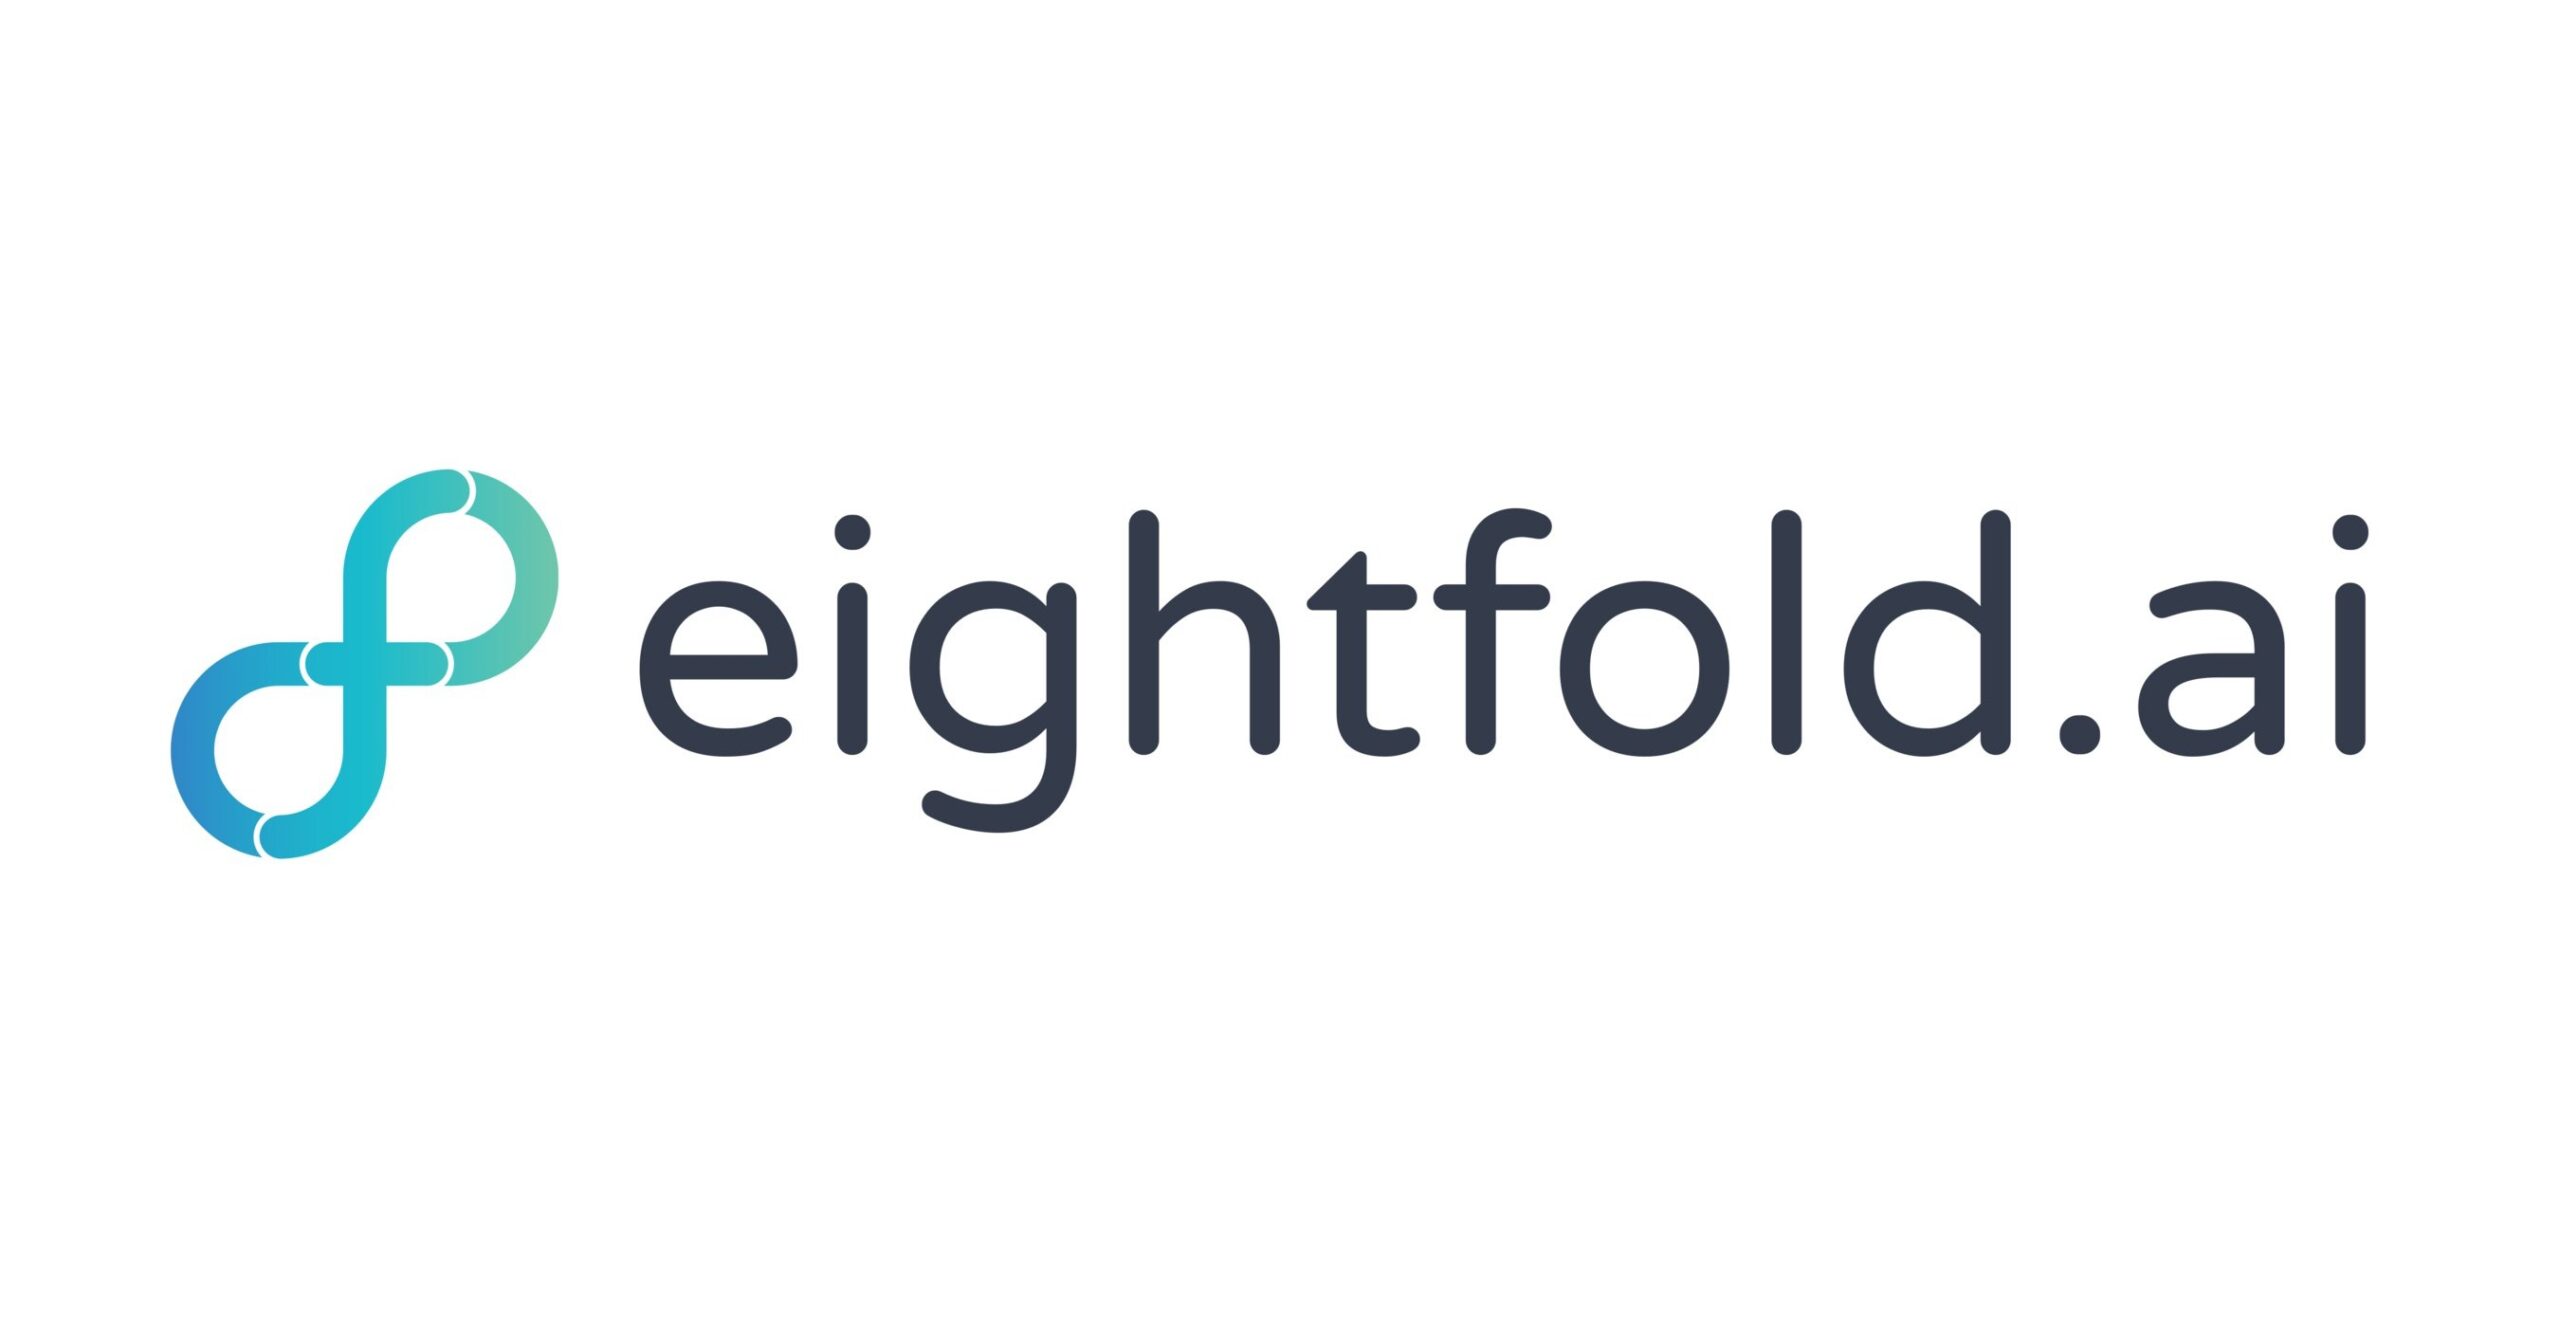 Eightfold AI logo